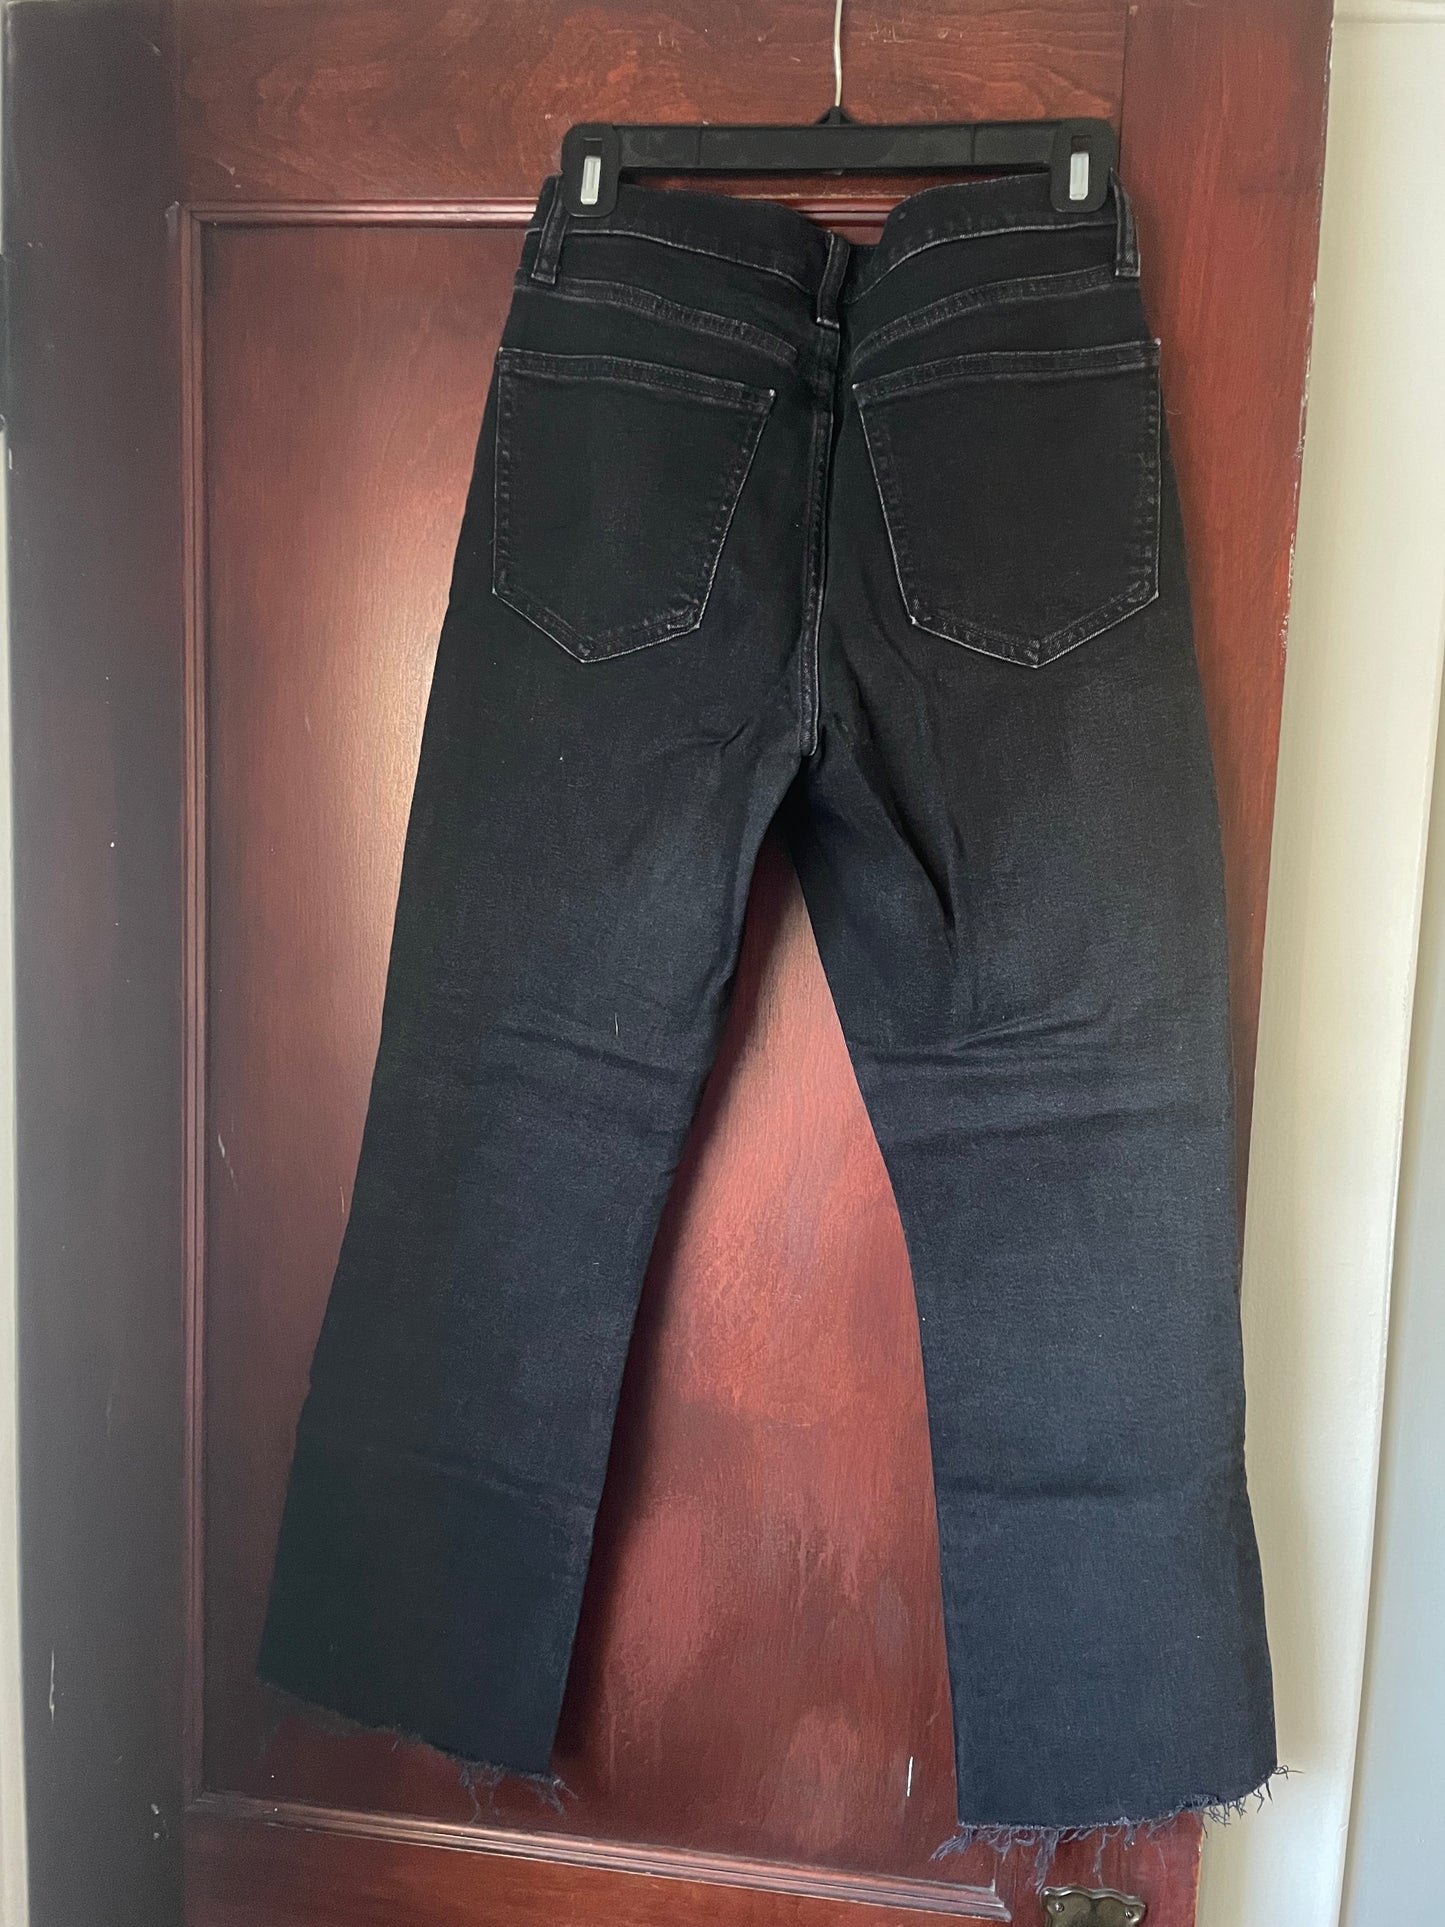 Gap Women’s Size 27/4R Kick Fit High Rise Black Jean